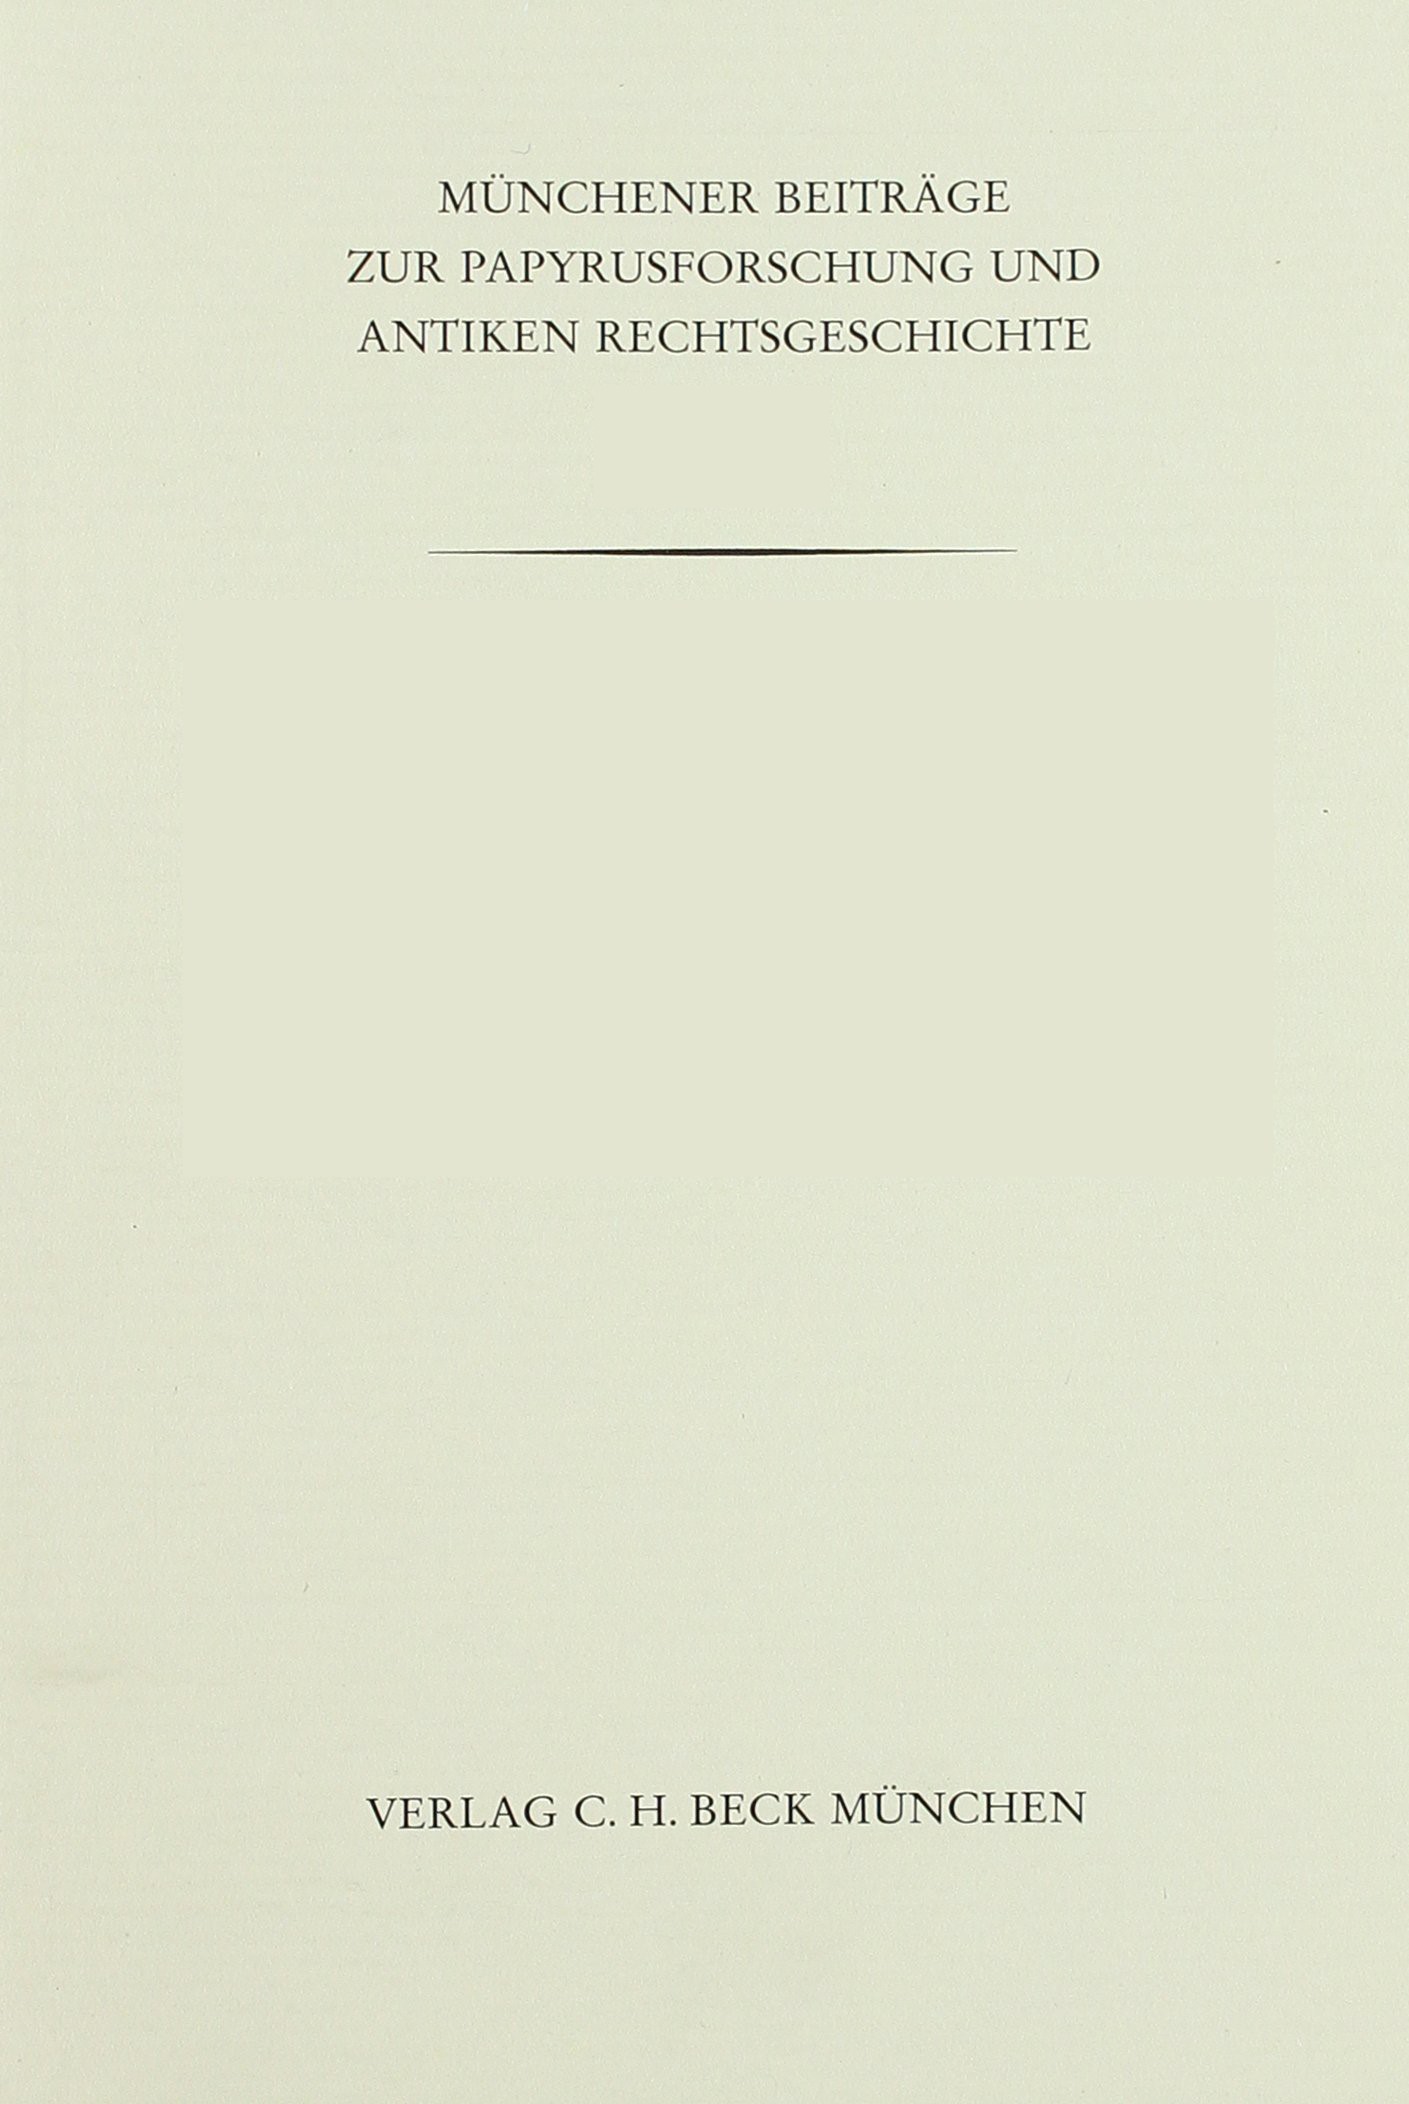 Cover: Herrmann, Münchener Beiträge zur Papyrusforschung Heft 83:  Kleine Schriften zur Rechtsgeschichte